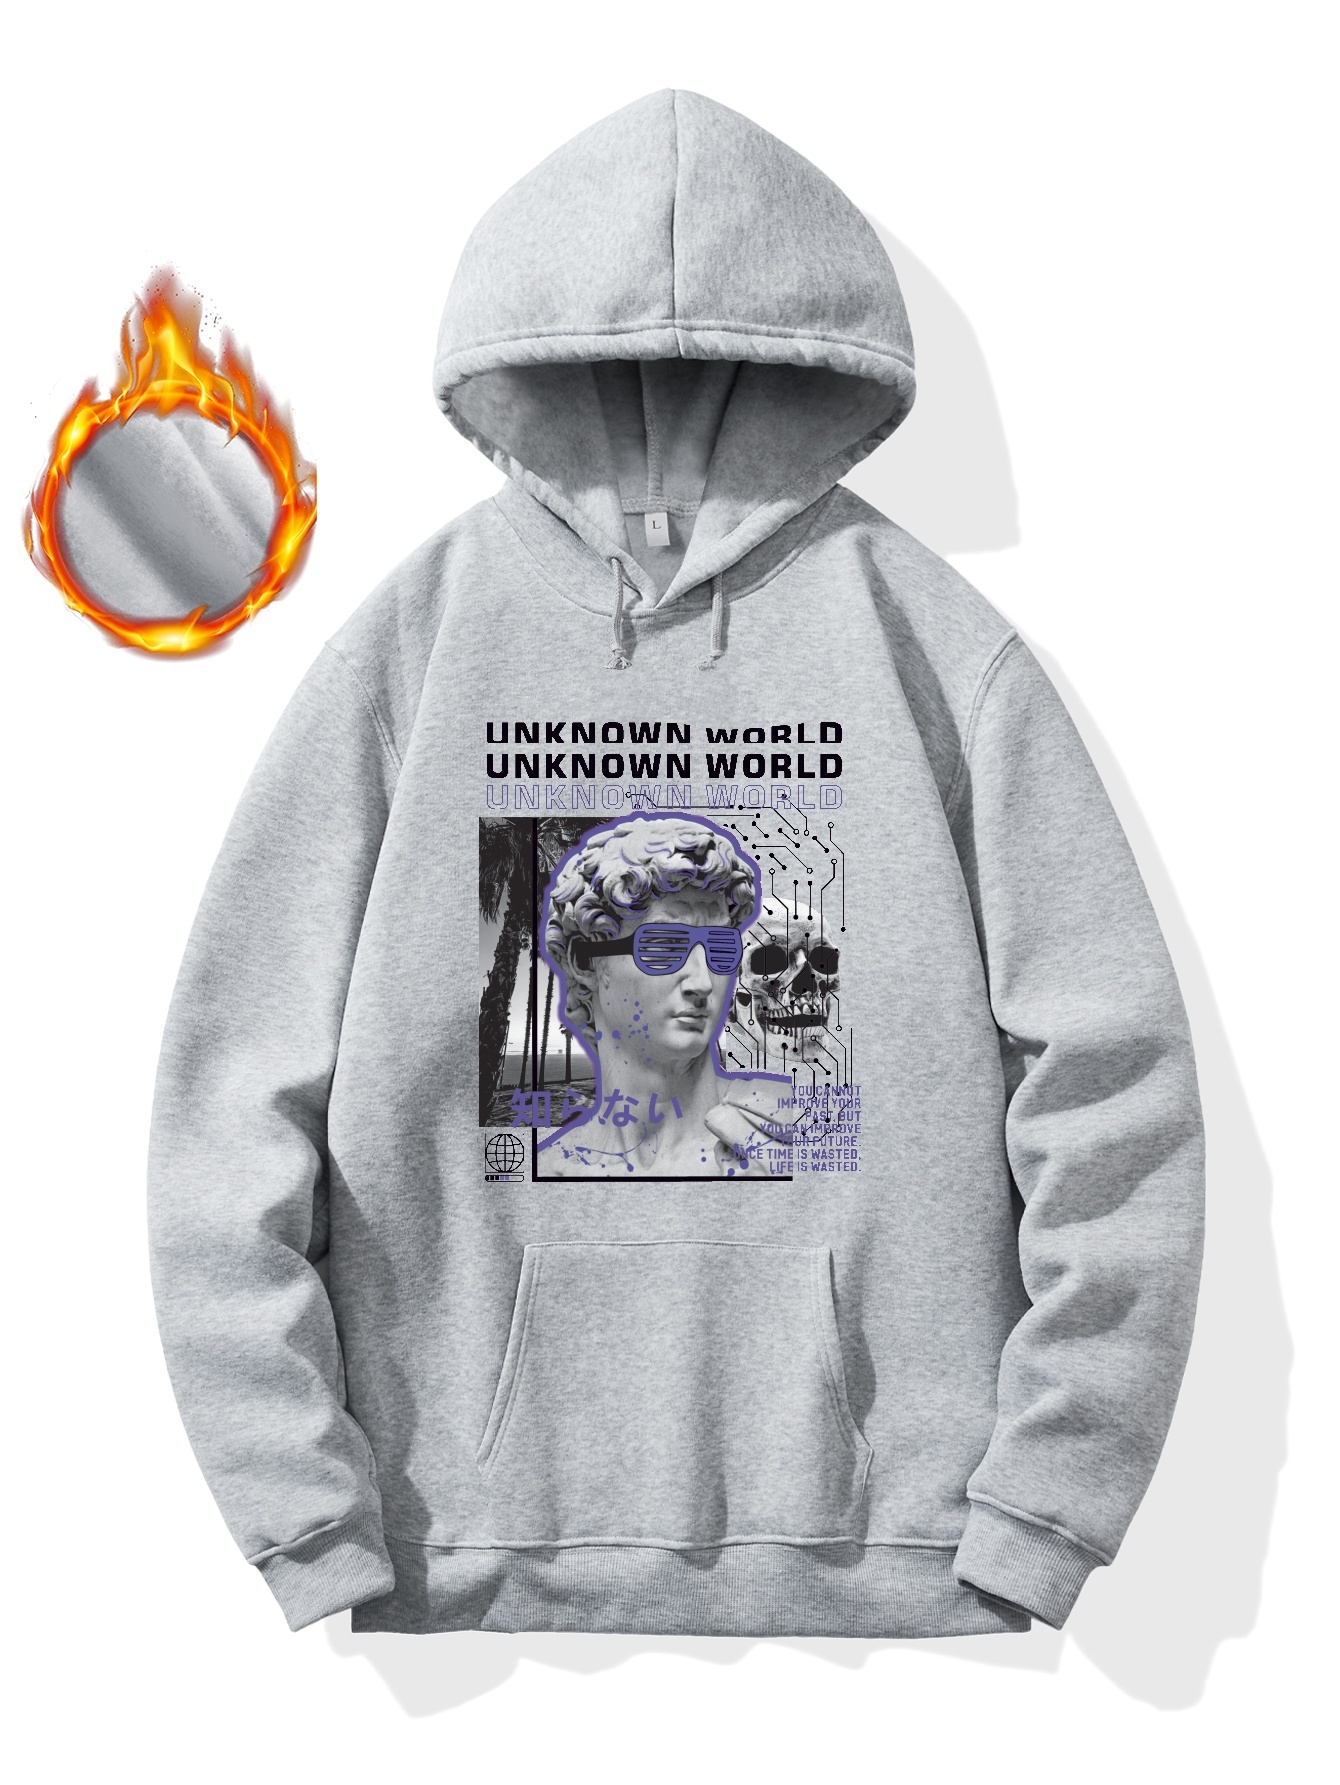 Supreme World Is Yours Hooded Sweatshirt